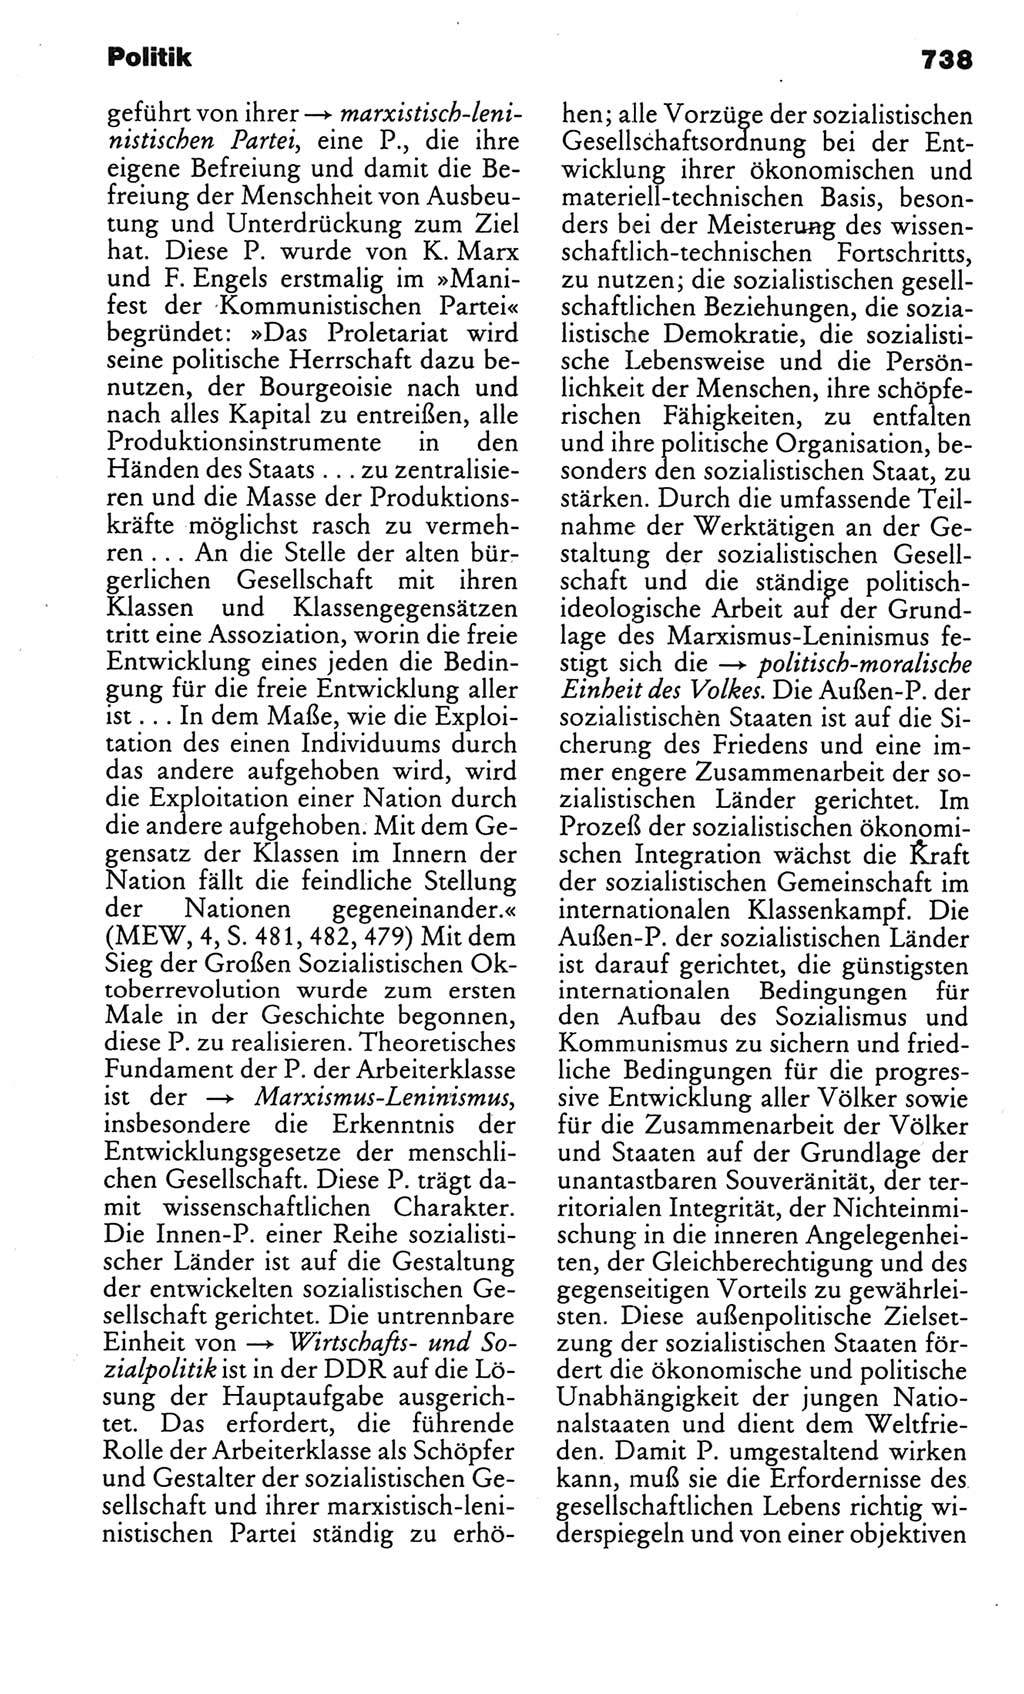 Kleines politisches Wörterbuch [Deutsche Demokratische Republik (DDR)] 1986, Seite 738 (Kl. pol. Wb. DDR 1986, S. 738)